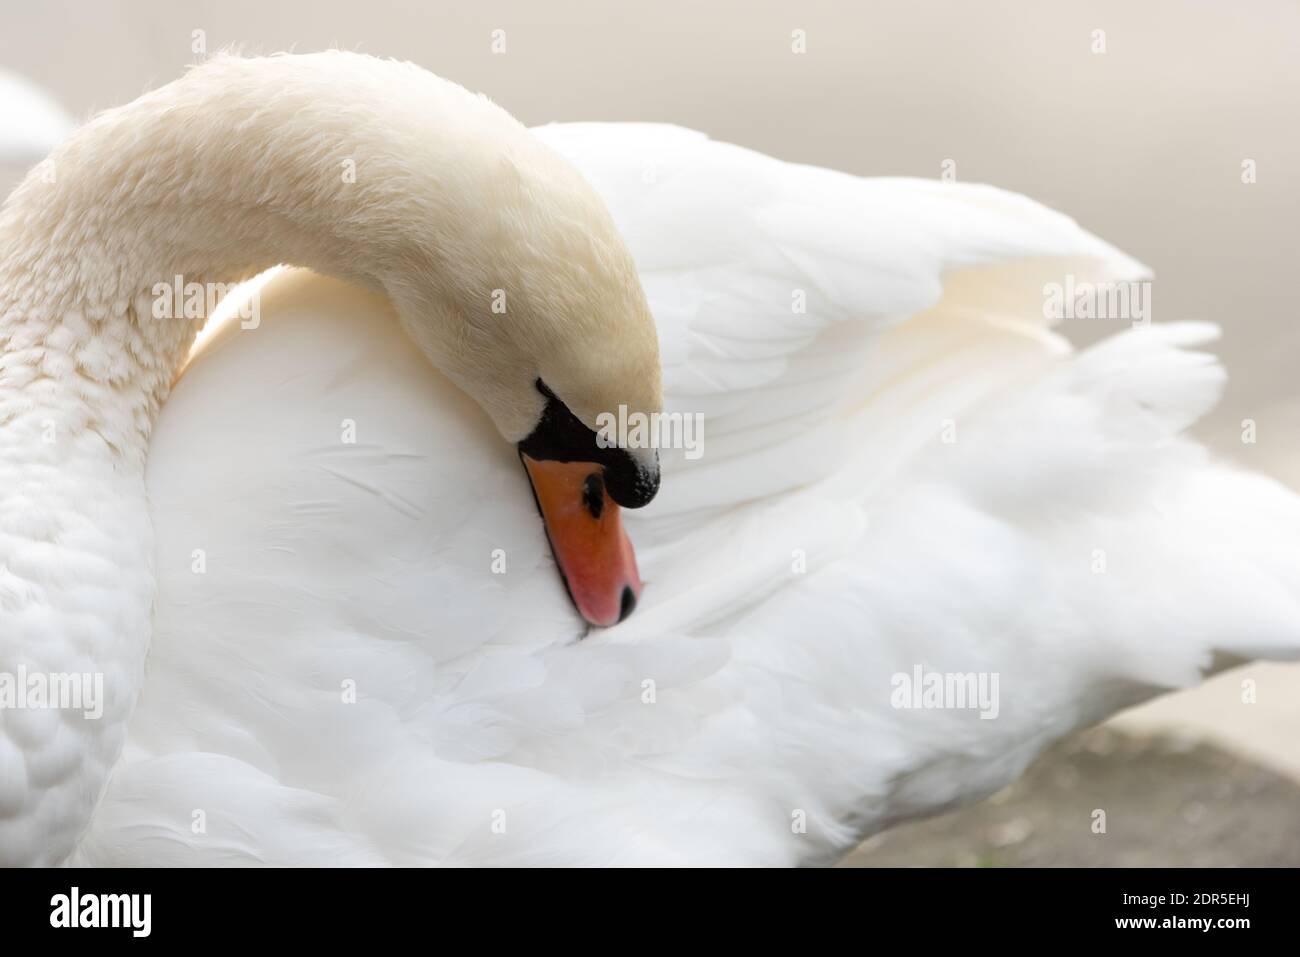 white swan grooming  in uk park winter light Stock Photo